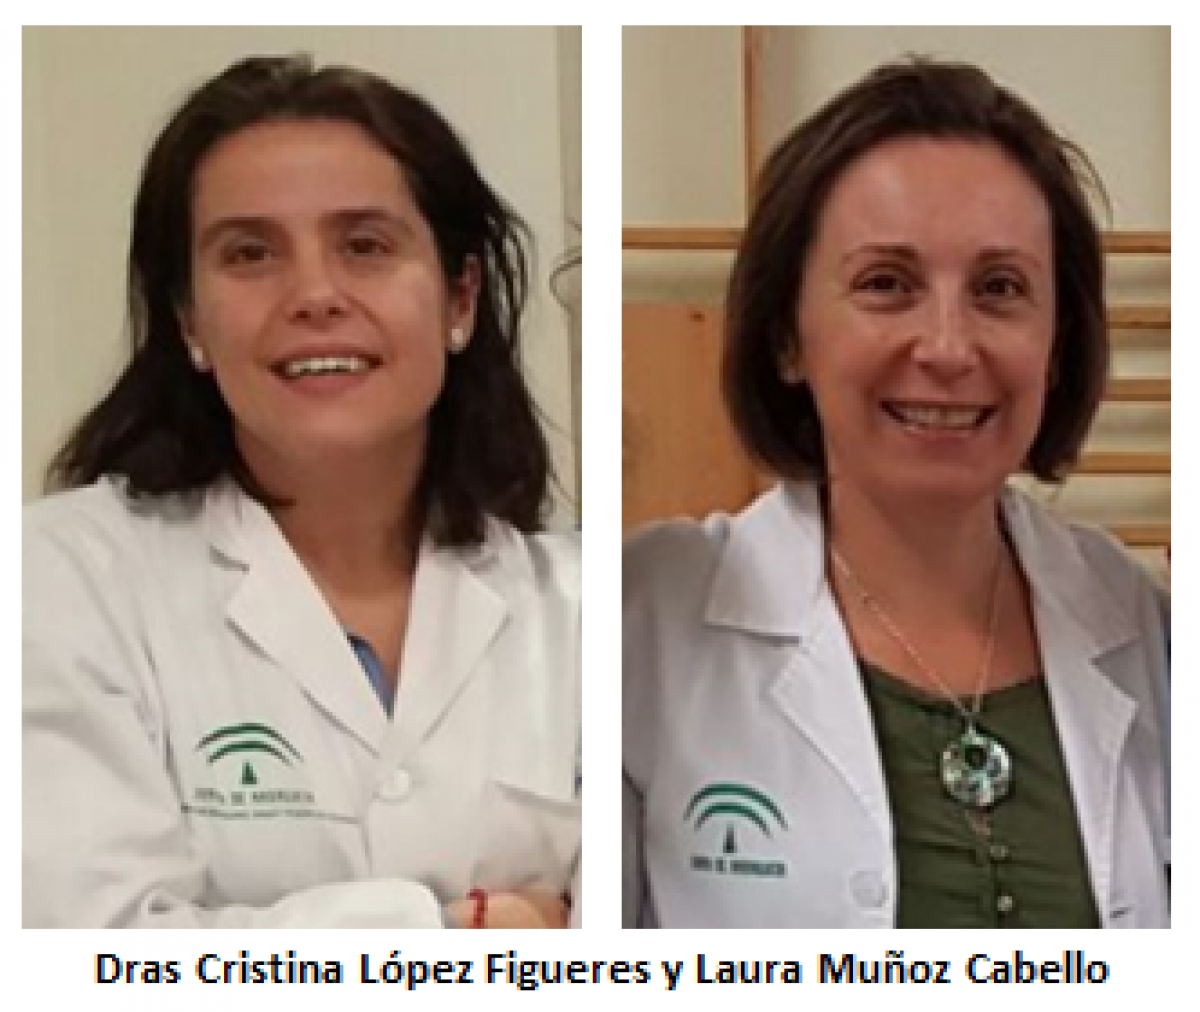 Las Dras Cristina López Figueres y Laura Muñoz Cabello acreditadas por la ACSA